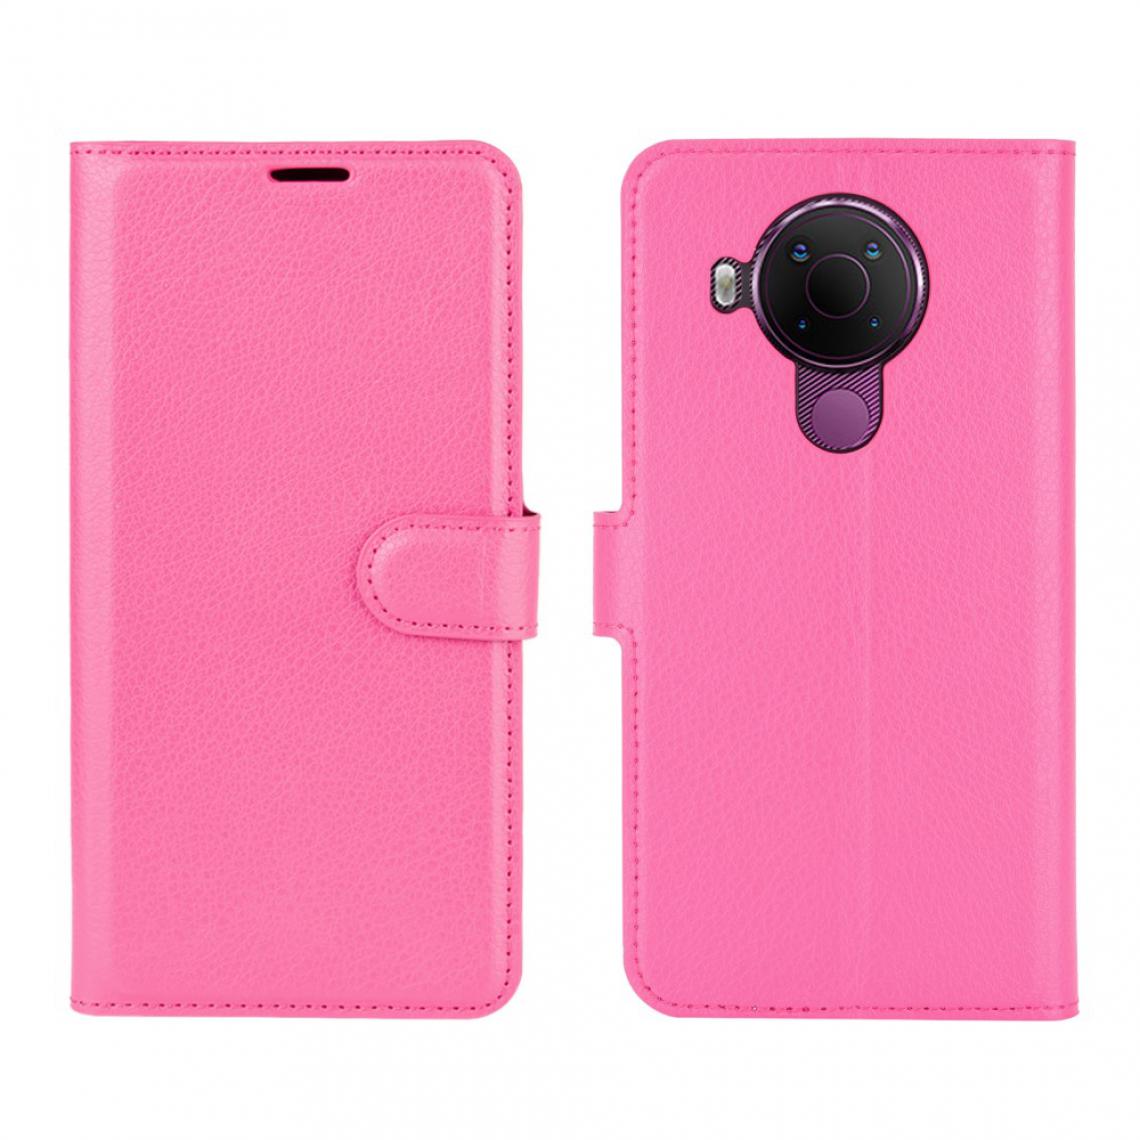 Other - Etui en PU Peau de Litchi avec support rose pour Nokia 5.4 - Coque, étui smartphone